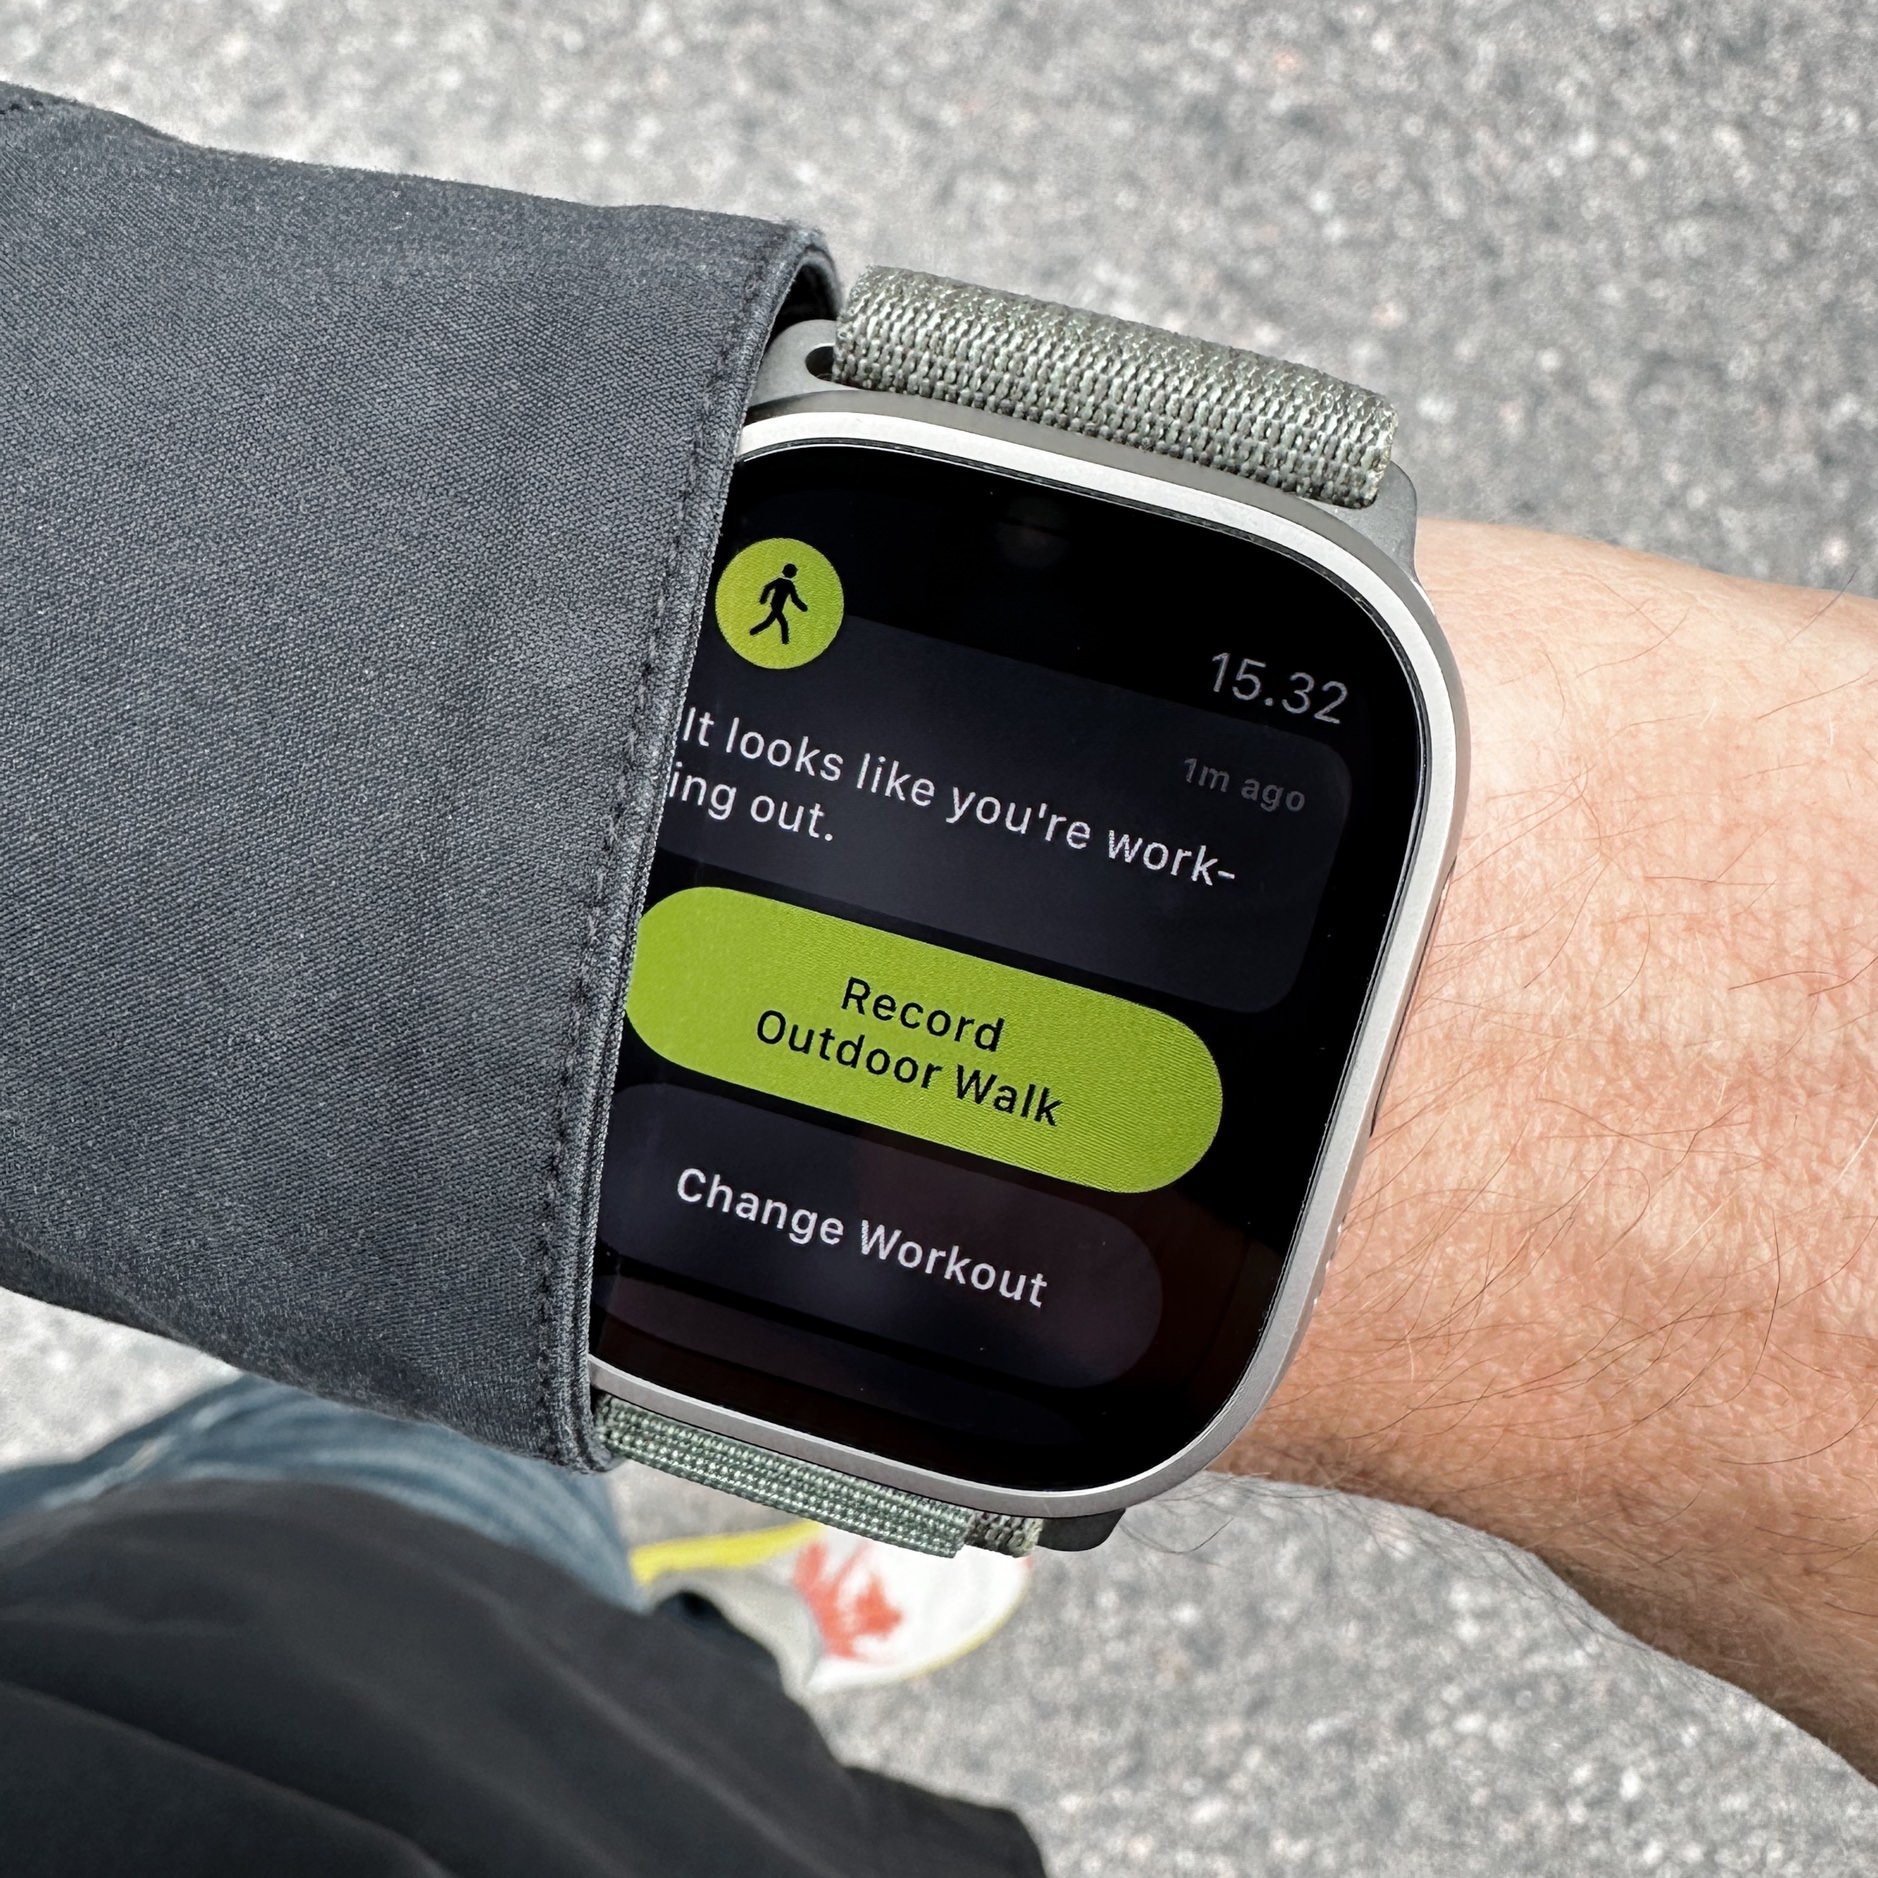 Bild zeigt Apple Watch, die fragt ob ein Workout aufgezeichnet werden soll.